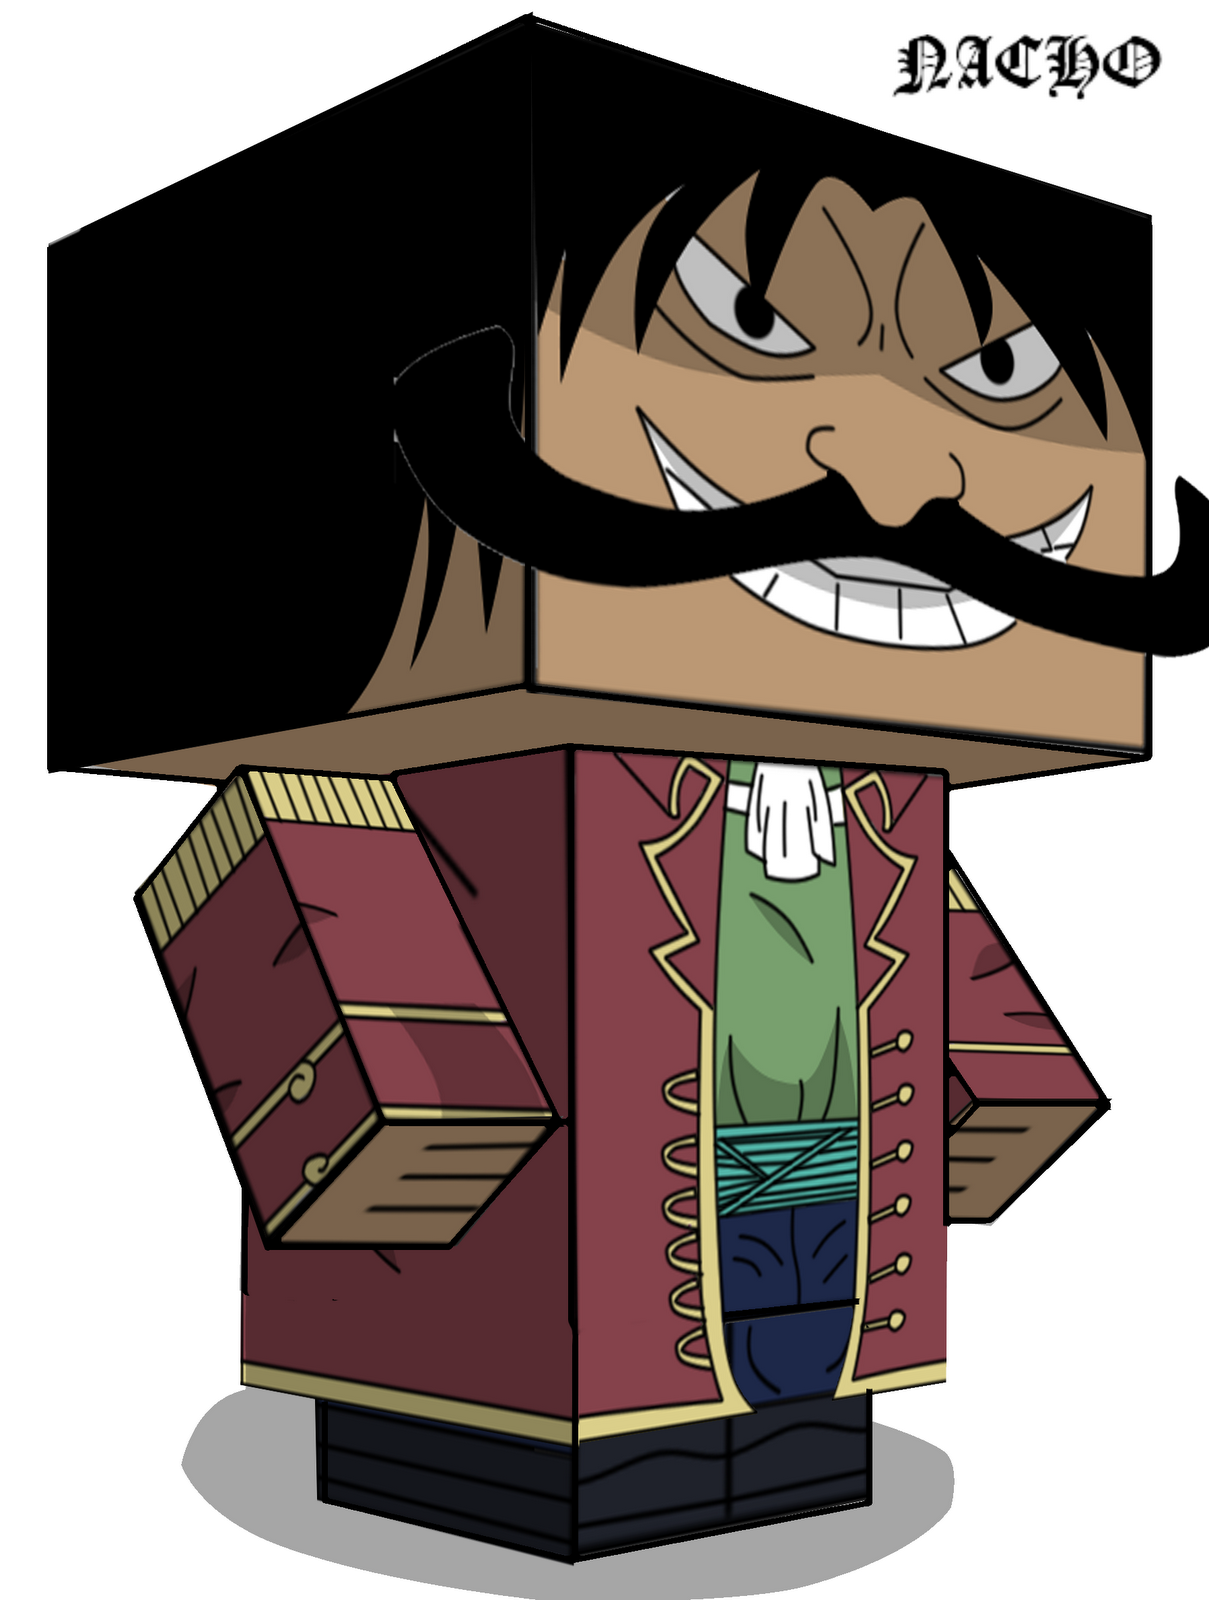 MangaPapercraft: Gol D. Roger (One Piece)El rey de los piratas